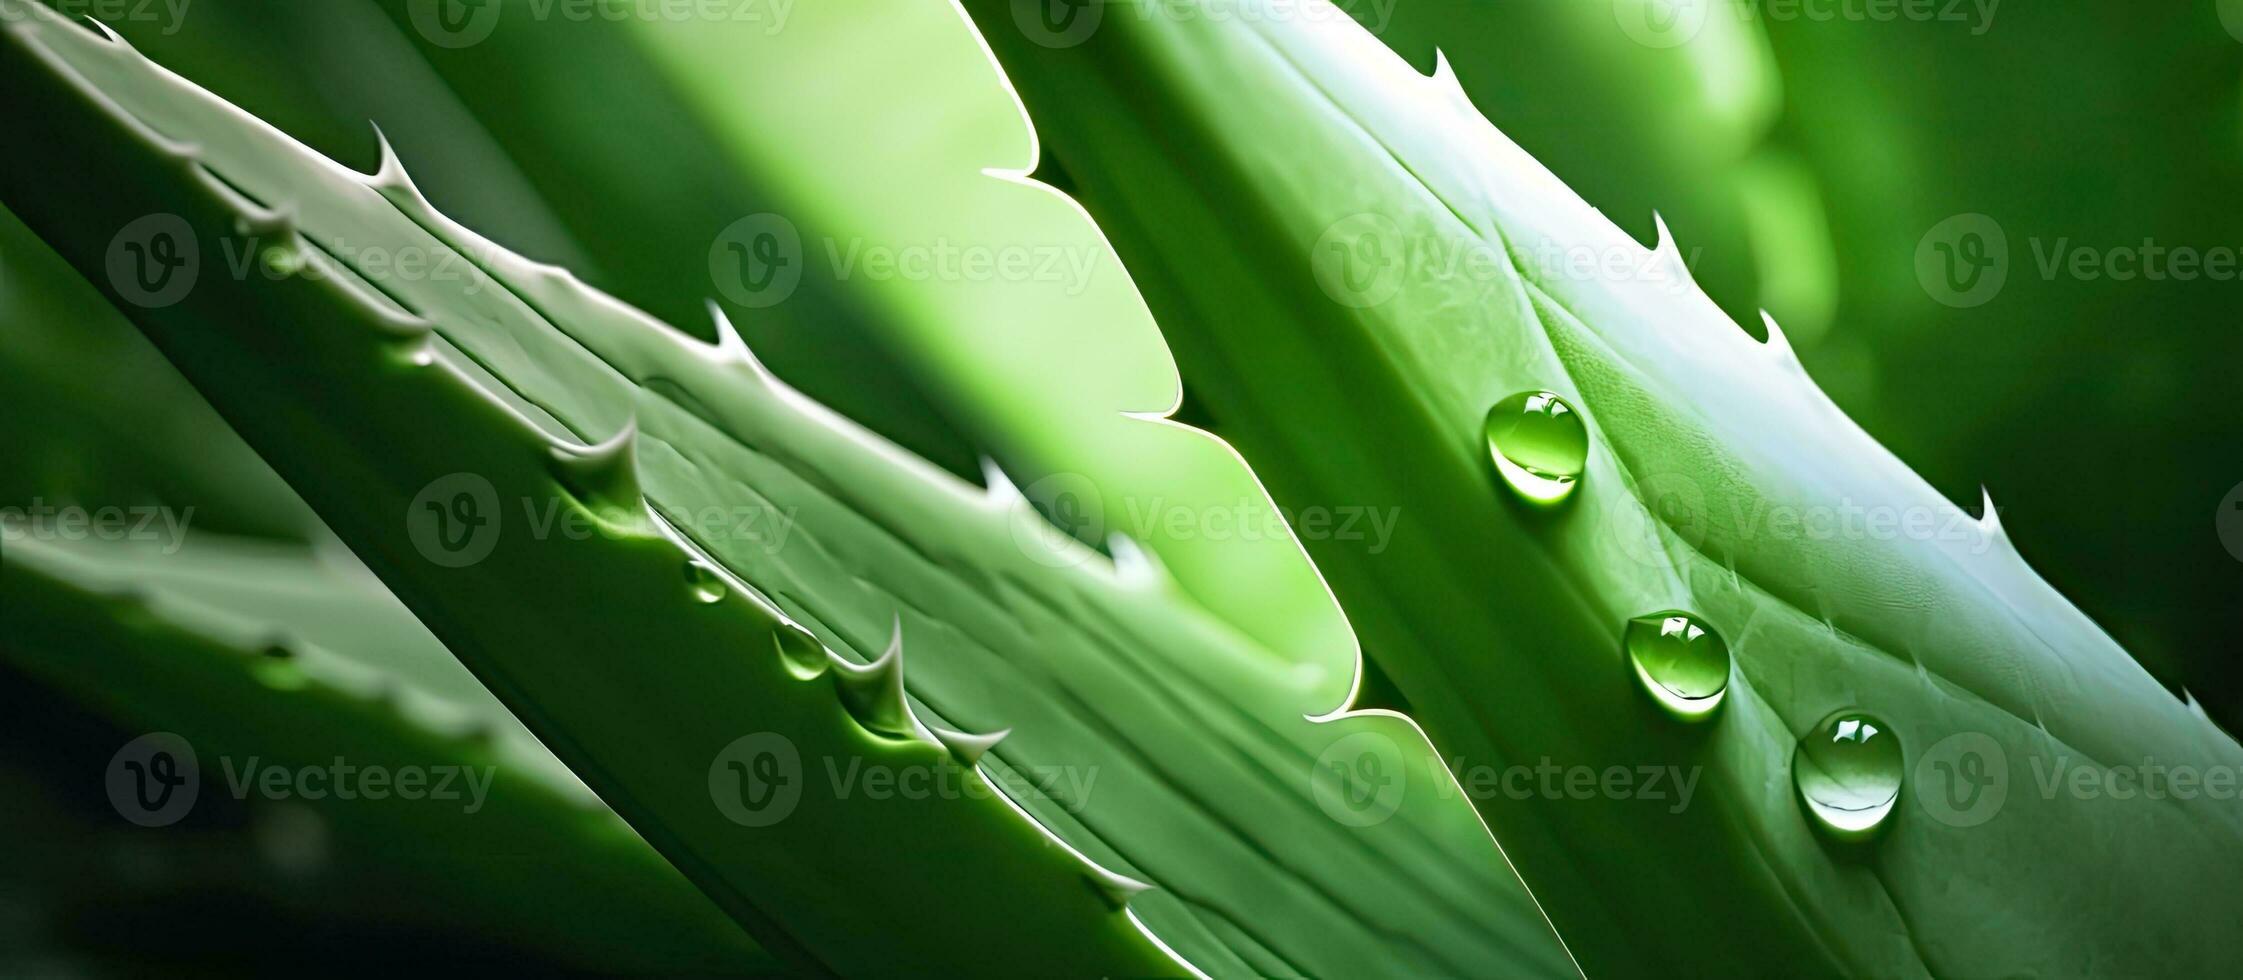 een extreem detailopname beeld van een groen aloë vera plant, gevangen genomen in full-frame fotografie. foto